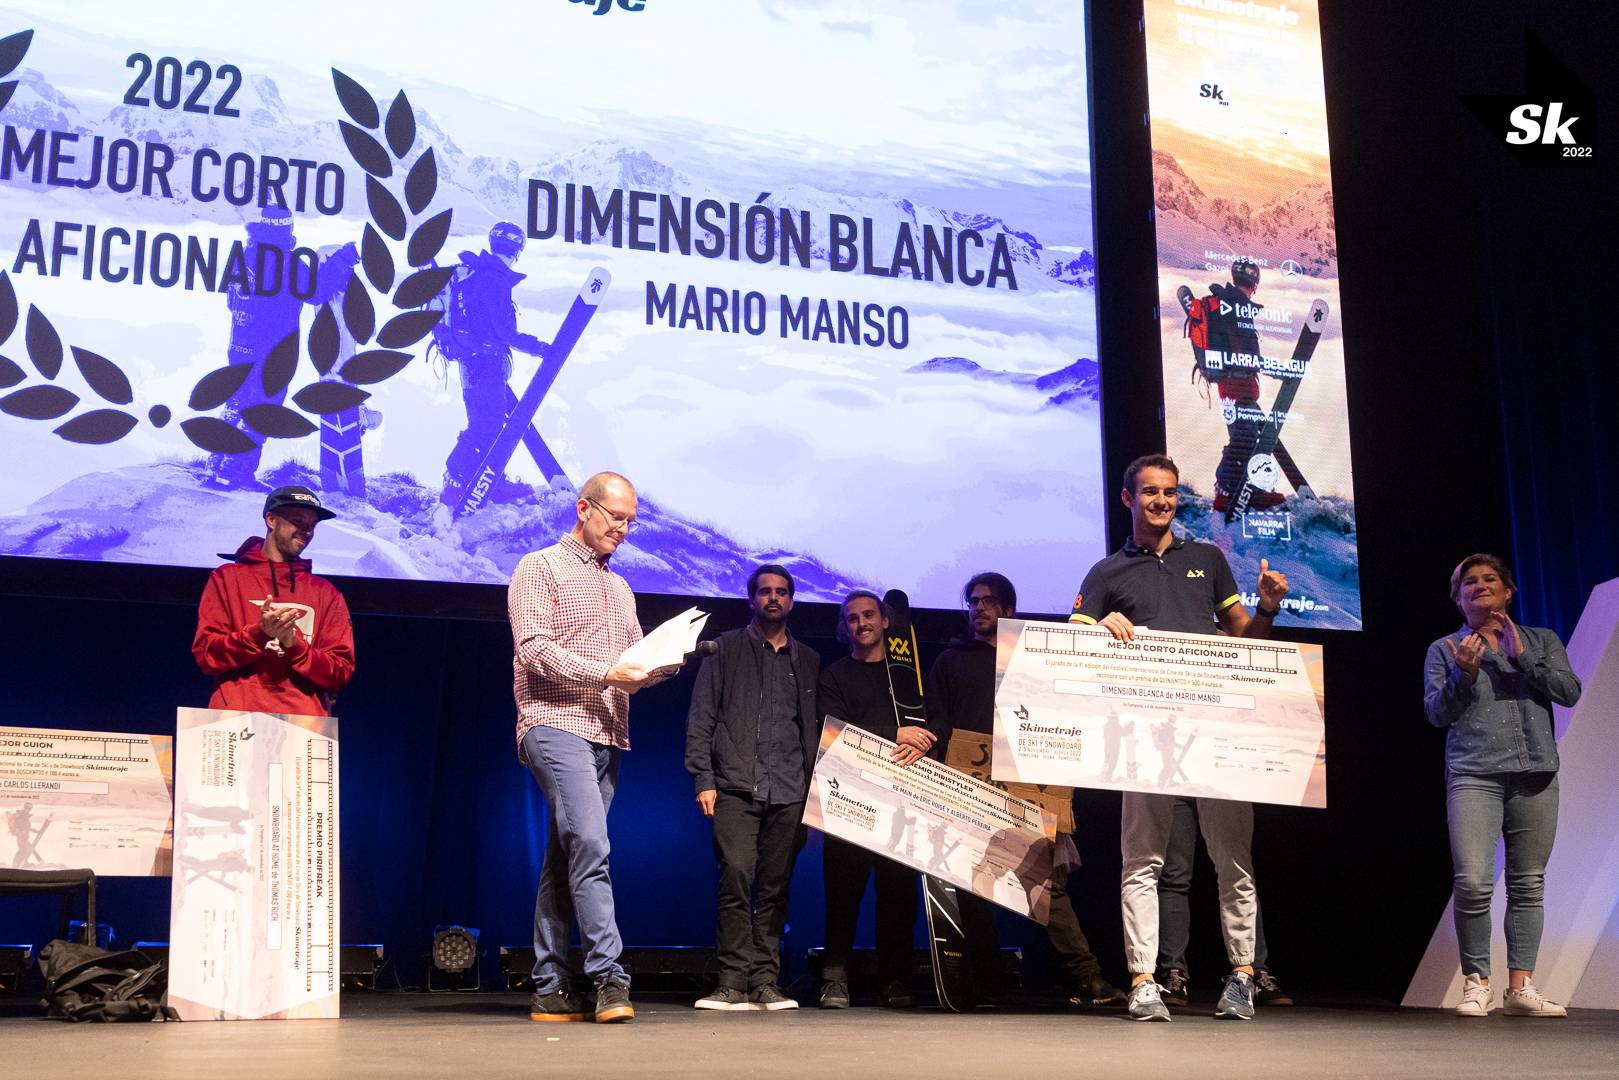 "Dimensión Blanca" del rider Alex Blasco y rodada en Andorra gana el Skimetraje